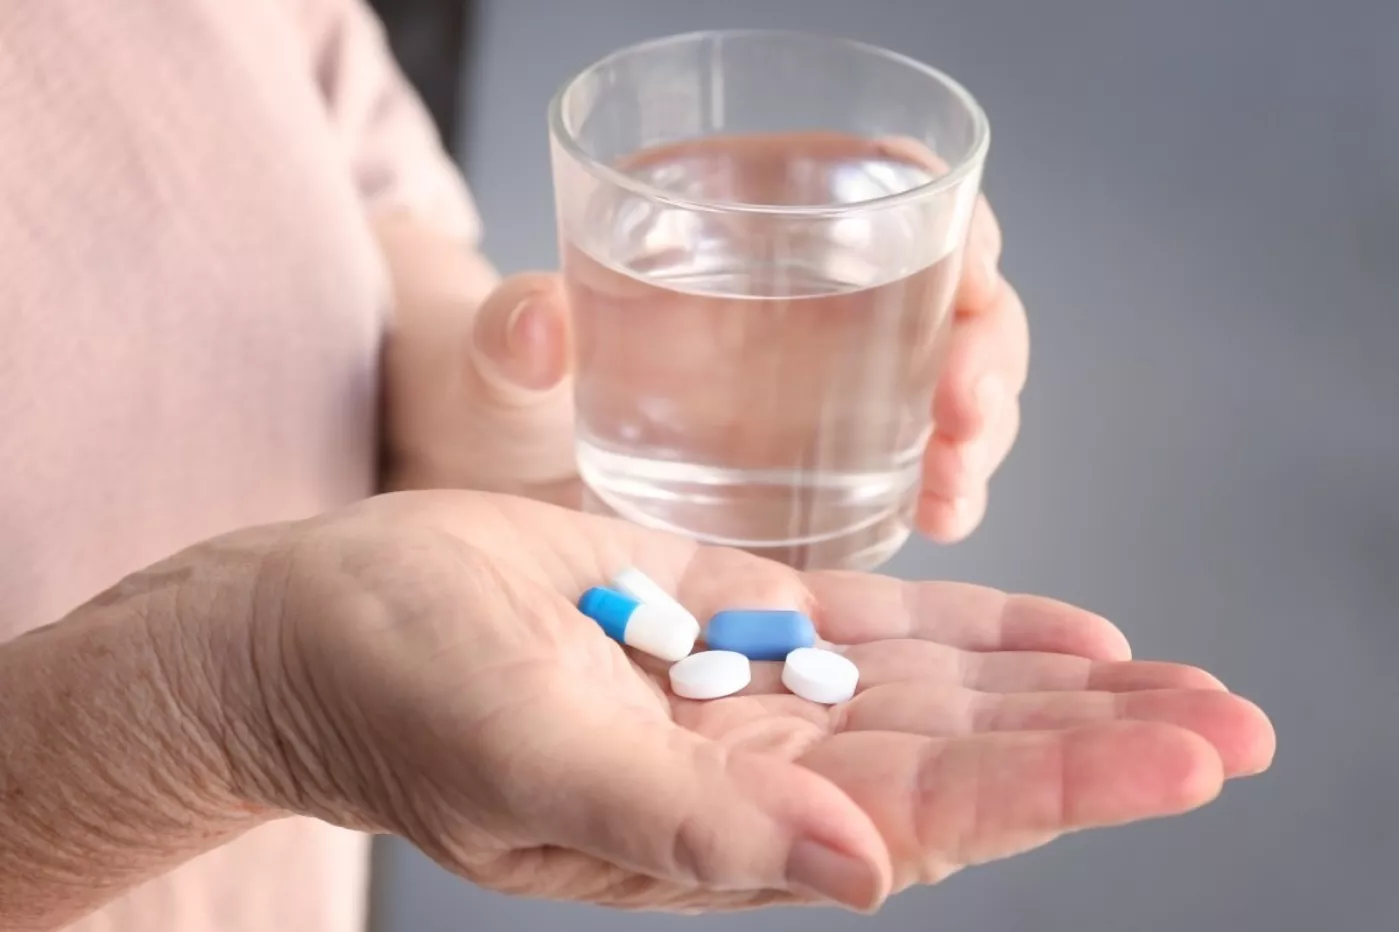 La conciliación de la medicación busca identificar fallos y discrepancias en la combinación de medicamentos, así como en la dosis, la vía de administración o la finalidad terapéutica.